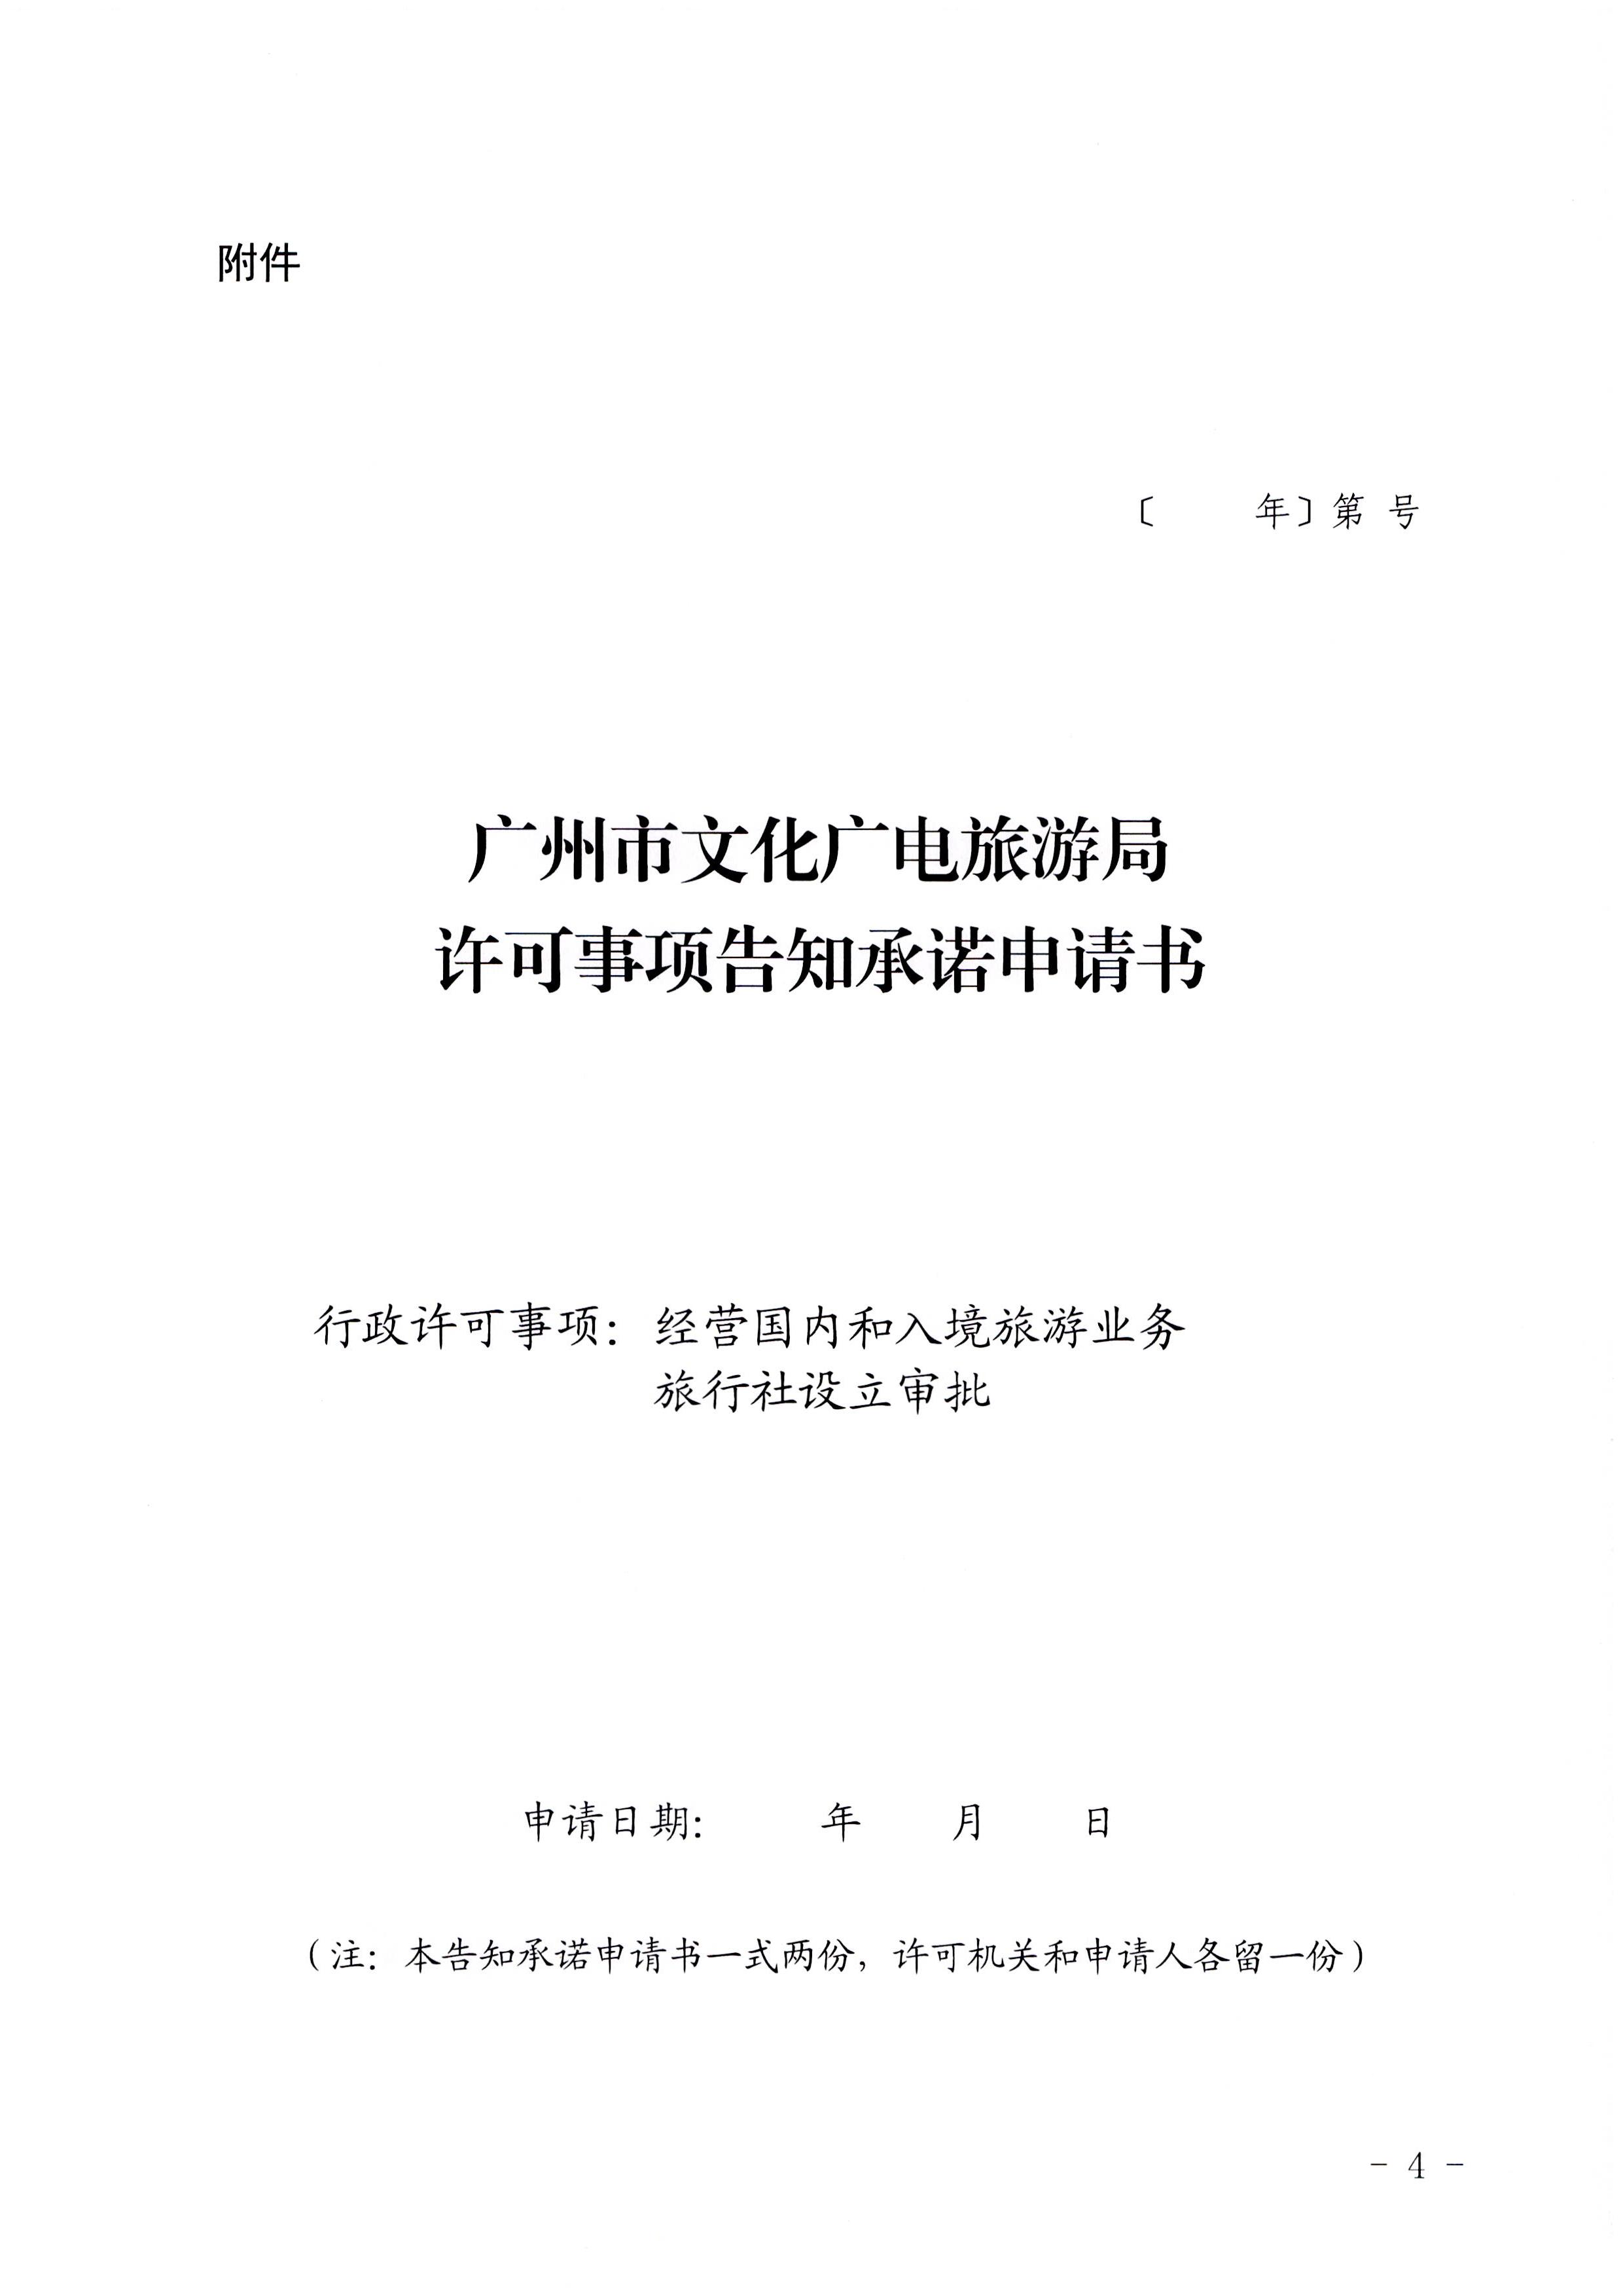 广东省文化和旅游厅印发证照分离改革实施方案的通知_页面_40.jpg